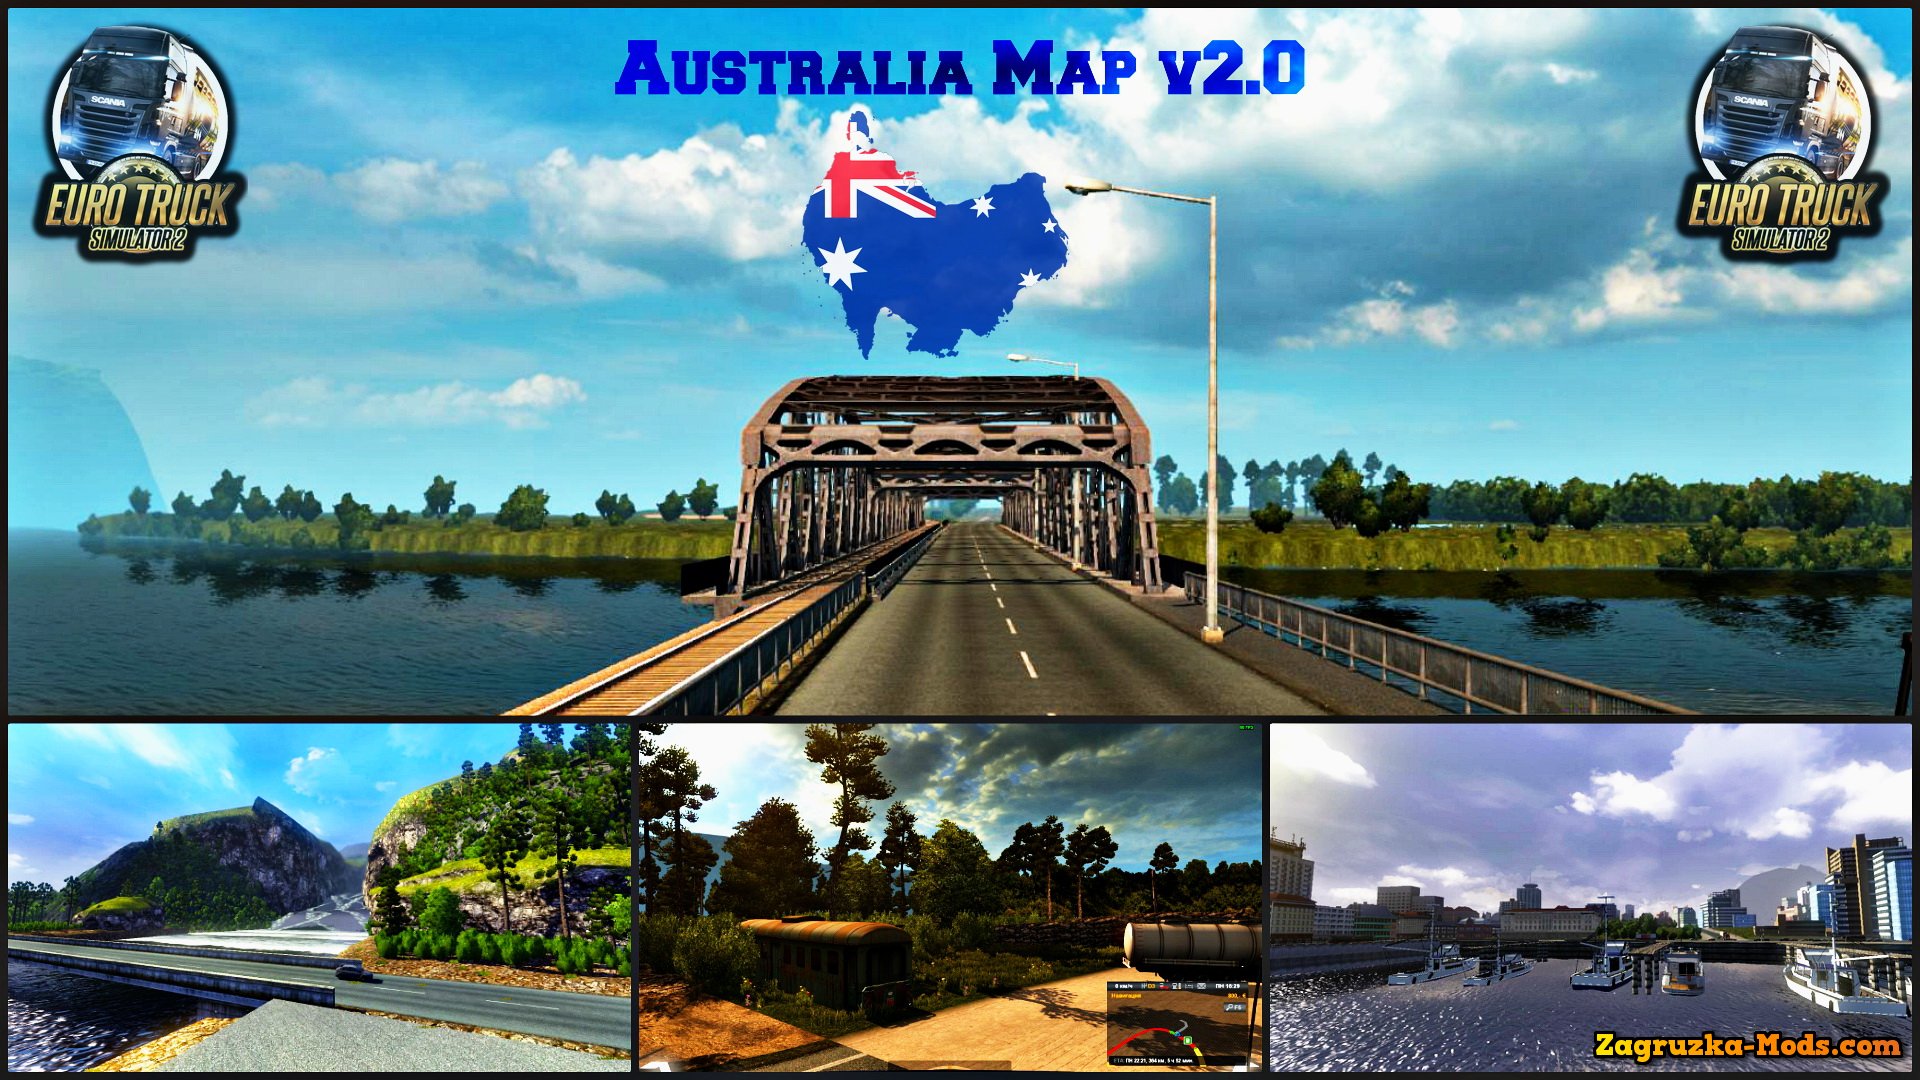 Australia Map v2.0 for ETS 2